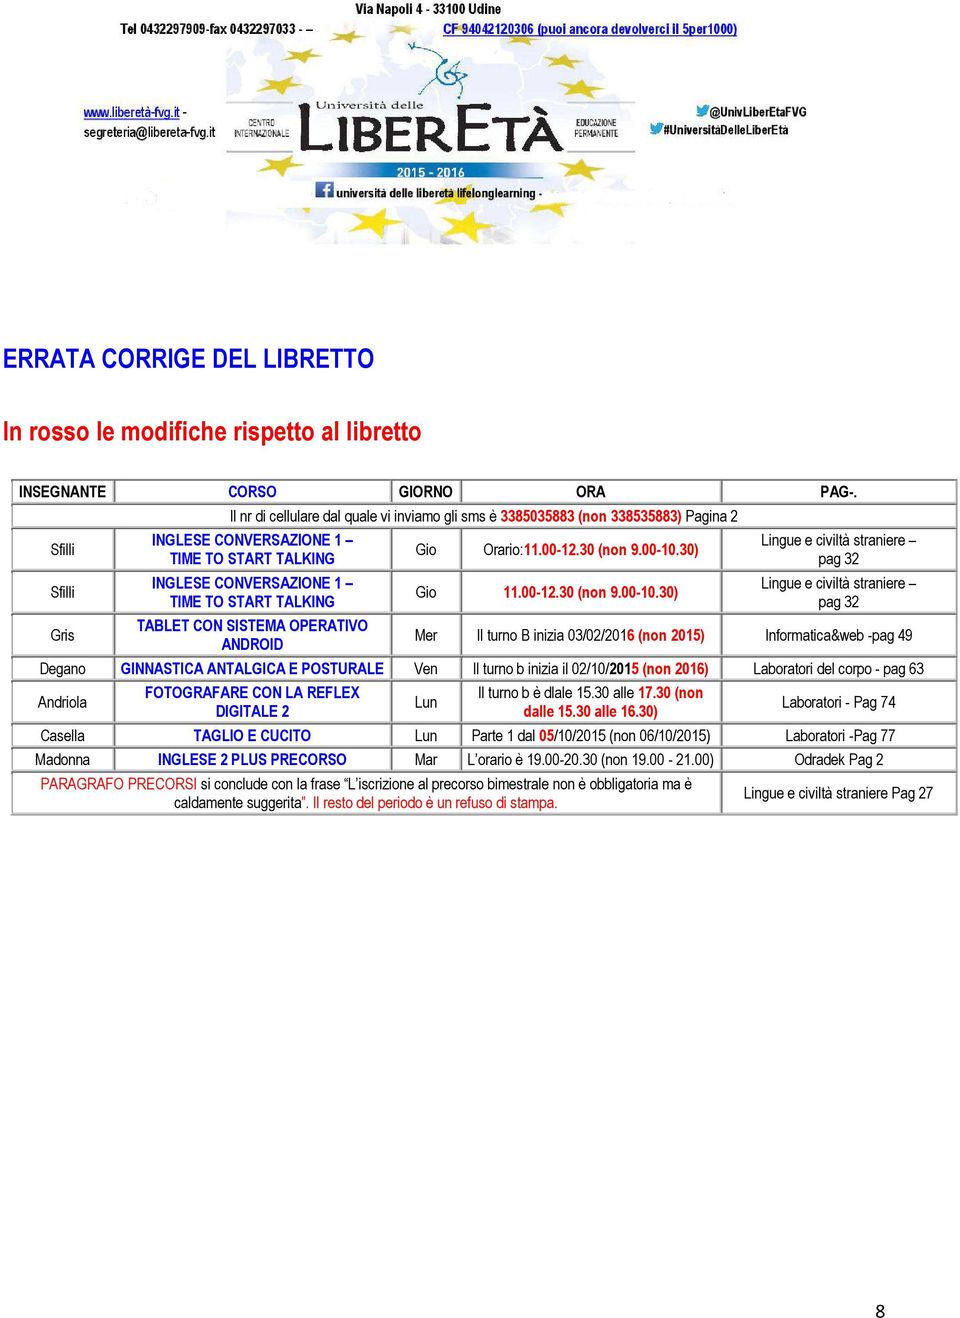 TABLET CON SISTEMA OPERATIVO ANDROID Gio Orario:11.00-12.30 (non 9.00-10.